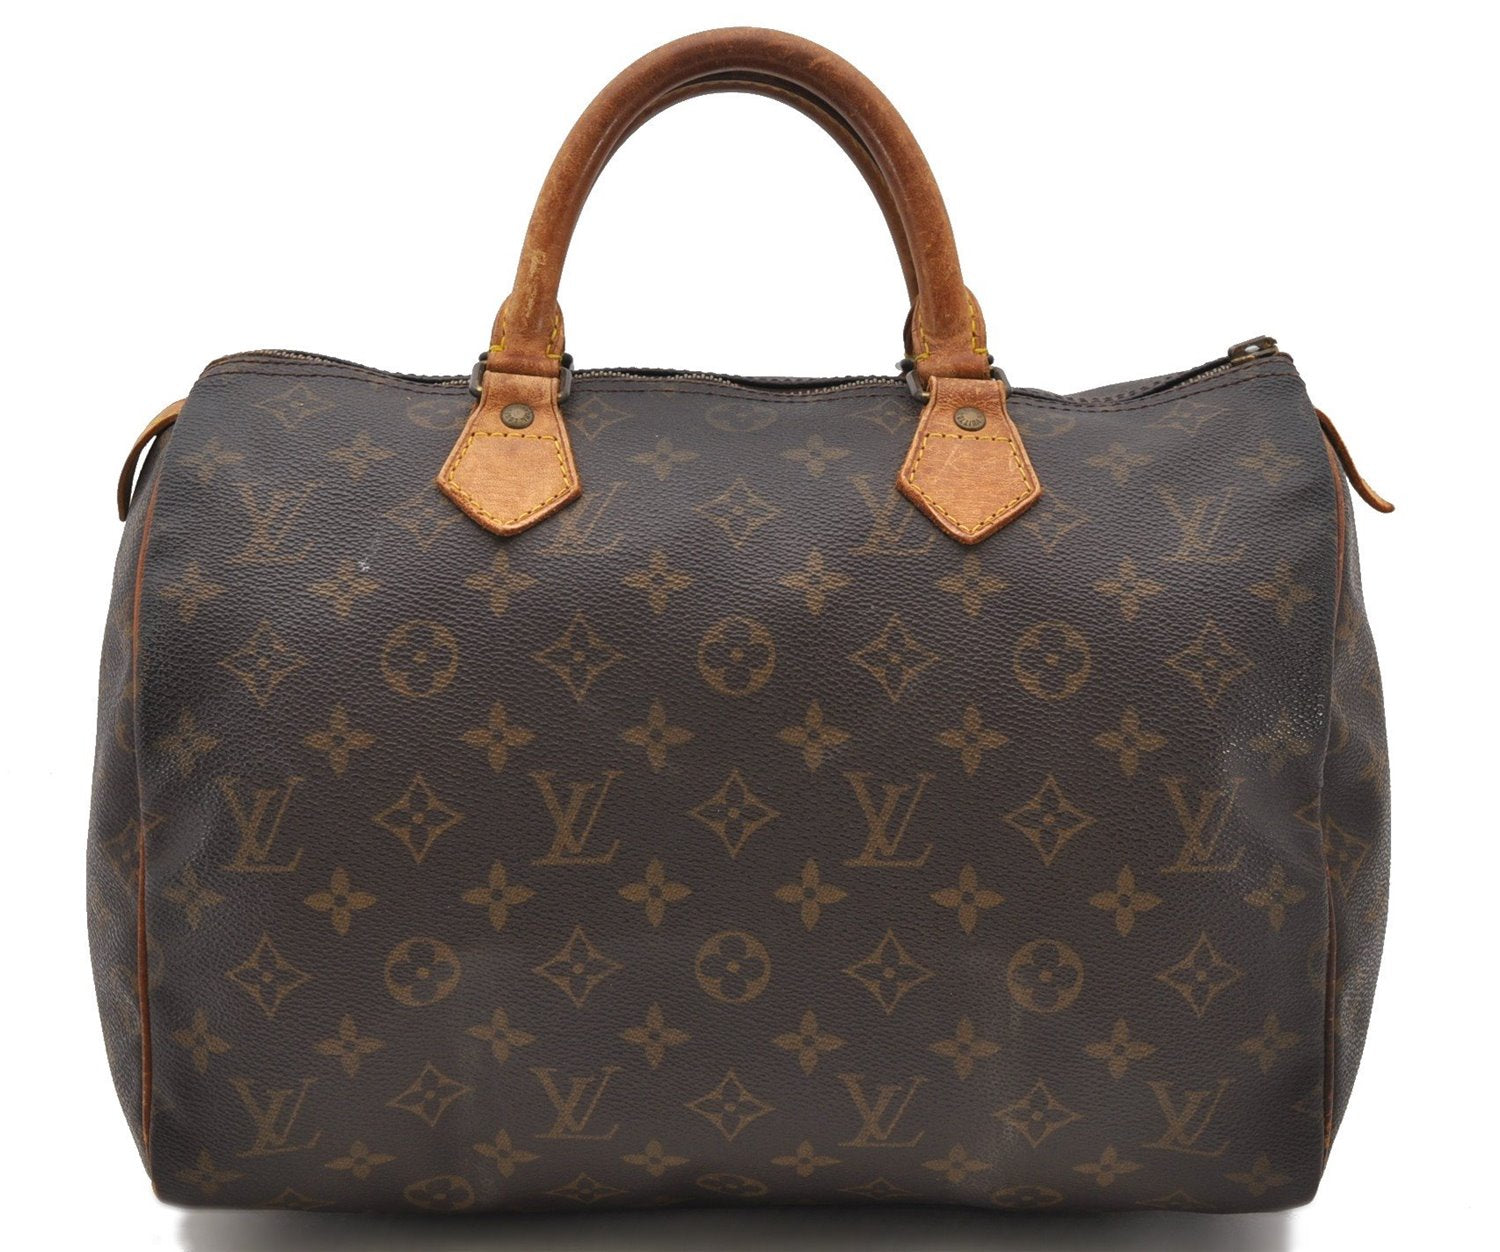 Authentic Louis Vuitton Monogram Speedy 30 Hand Bag Purse M41526 LV Junk 1893D